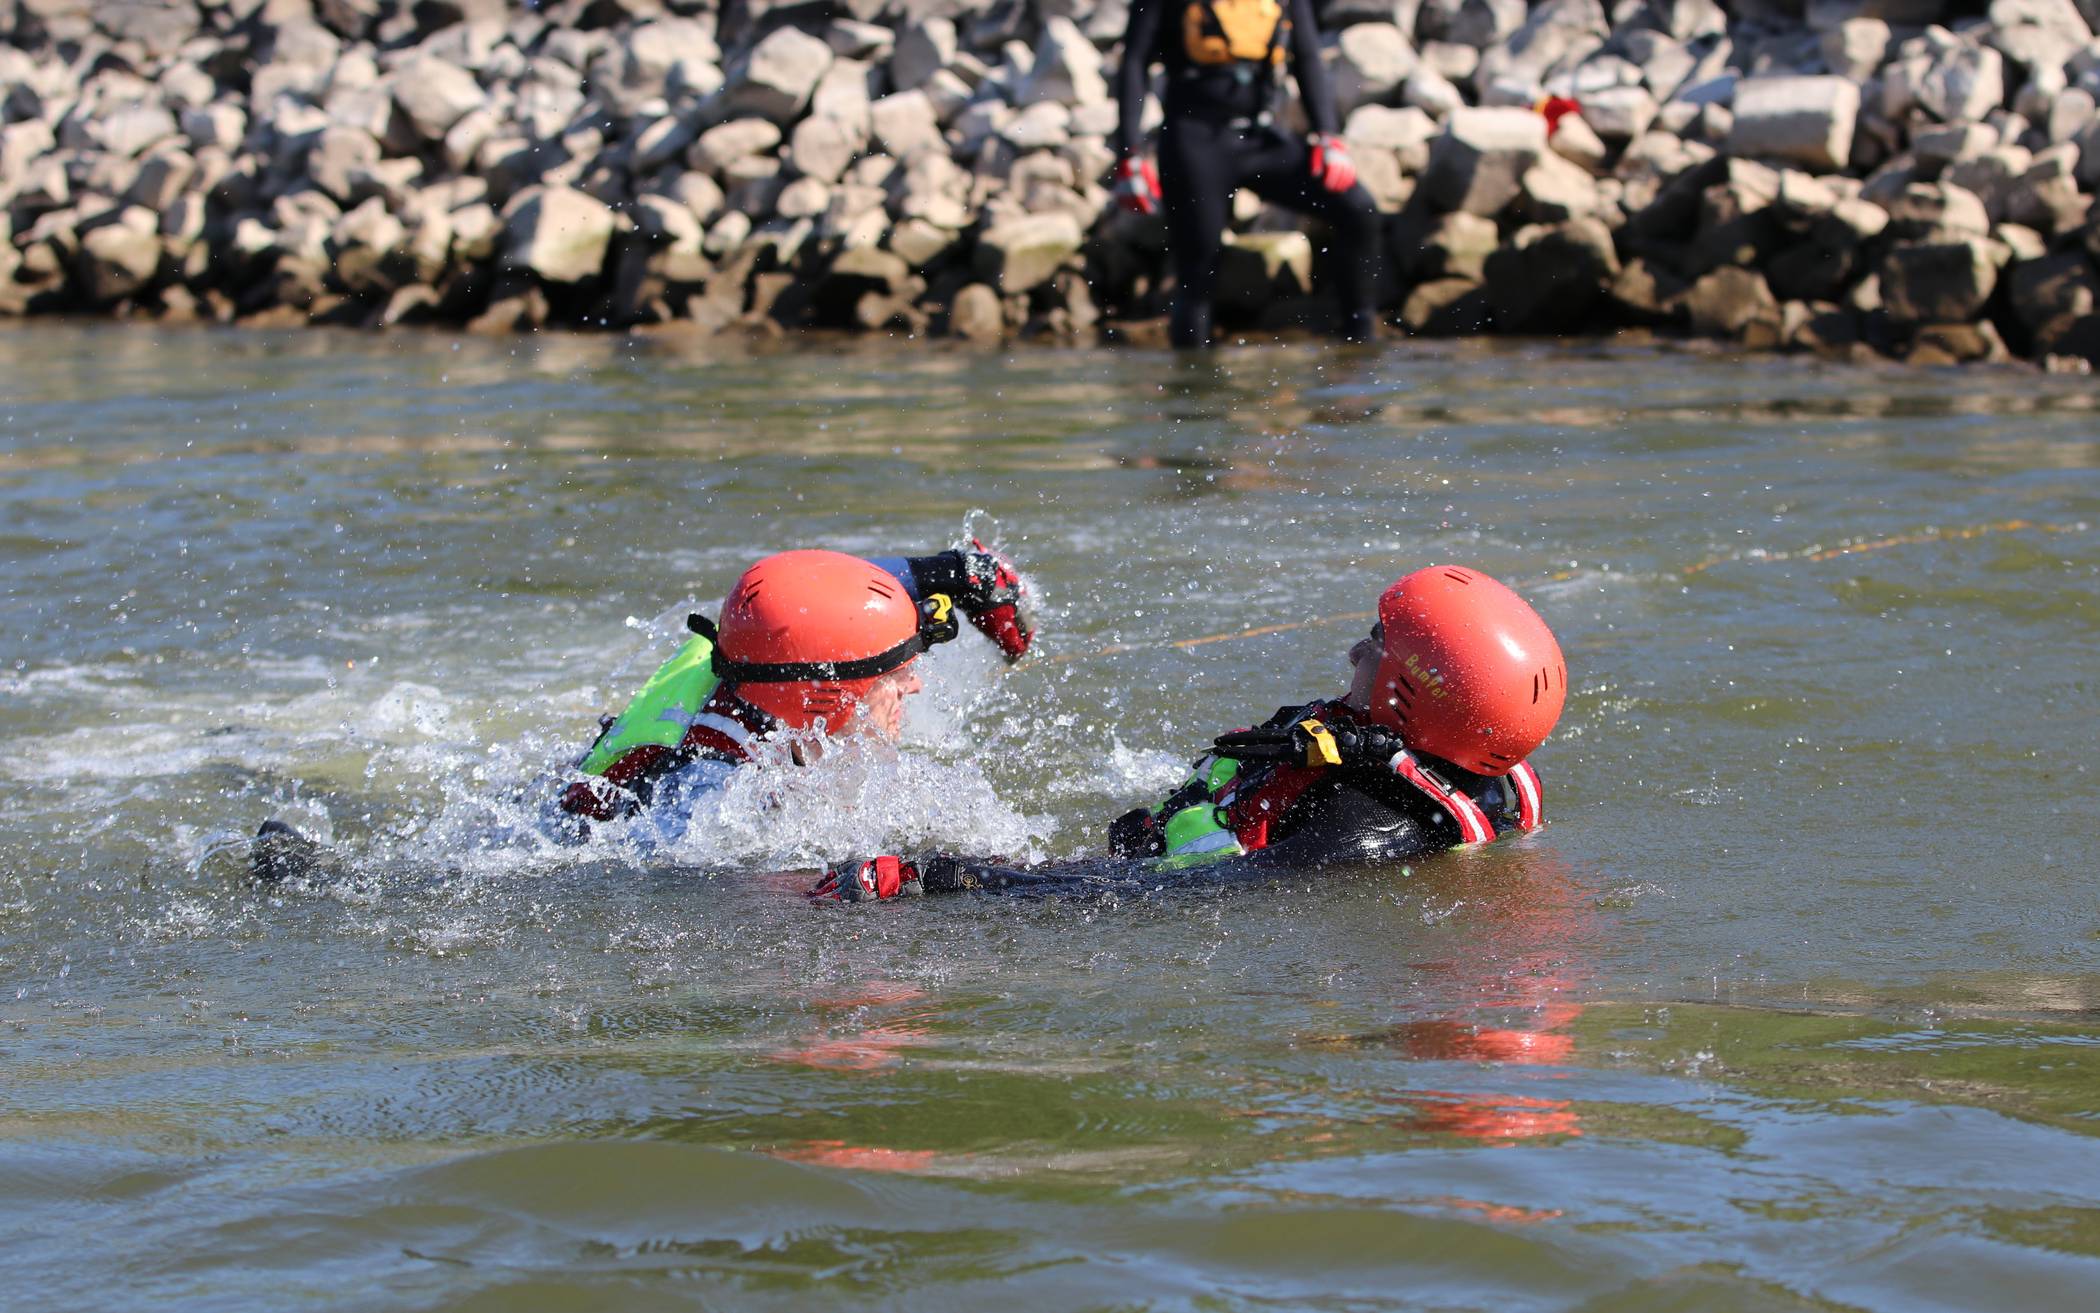  Bei einer Übung im Rhein schwimmt ein Strömungsretter (links) der Taucherstaffel zu der in Not geratenen Person, um diese so schnell wie möglich zu sichern und ein Untergehen zu verhindern. 